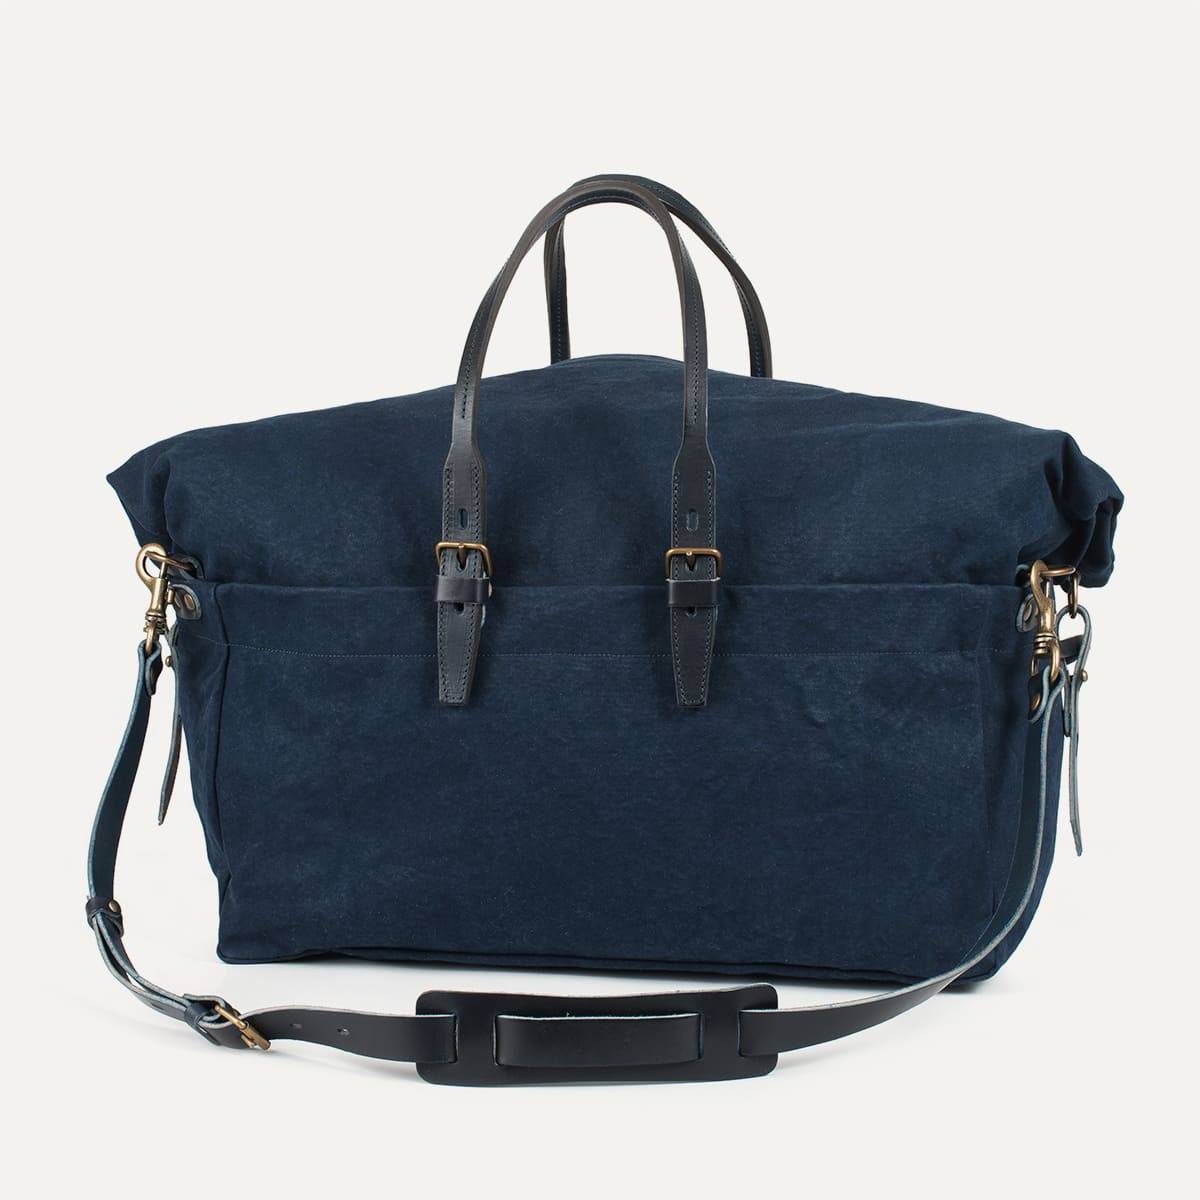 Cabine Travel bag - Navy Blue